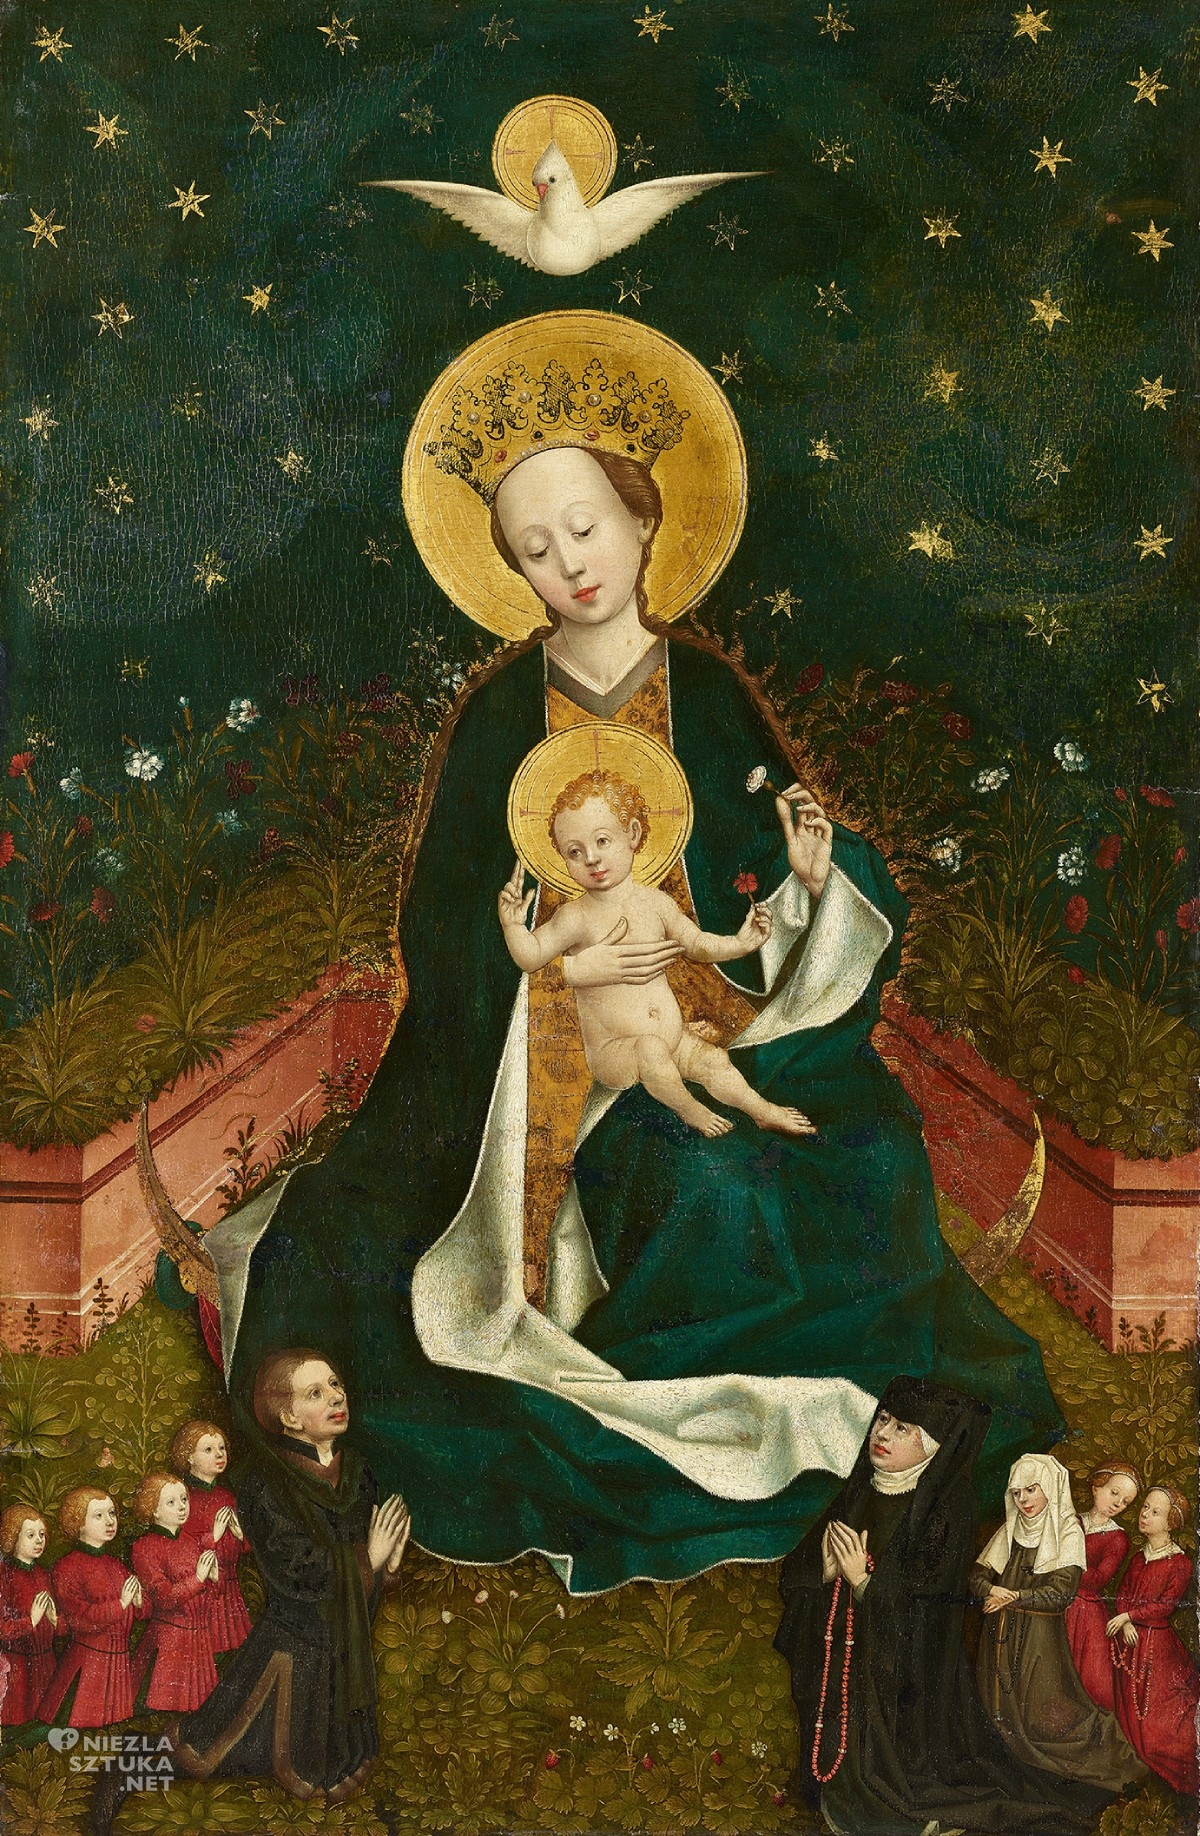 Mistrz Koloński, Madonna na półksiężycu w altanie różanej z rodziną fundatora, hortus conclusus, niezła sztuka